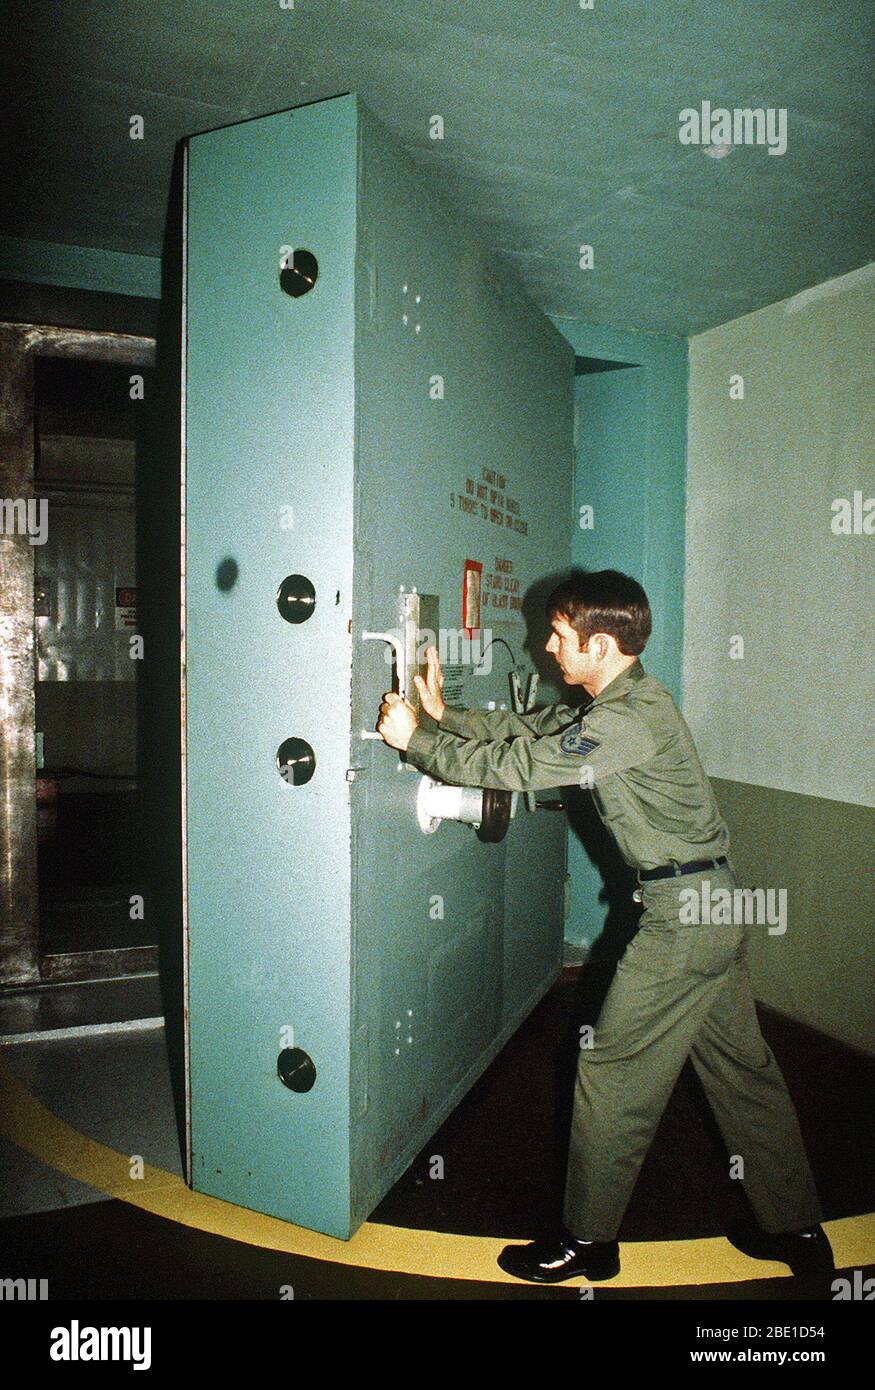 1981 - Personale Sgt. David Pierce manovre l'enorme di acciaio porta di accesso sotterranea di un missile launch control facility. Pierce è un manager della struttura, 91Missile strategico ala, Strategic Air Command. Foto Stock